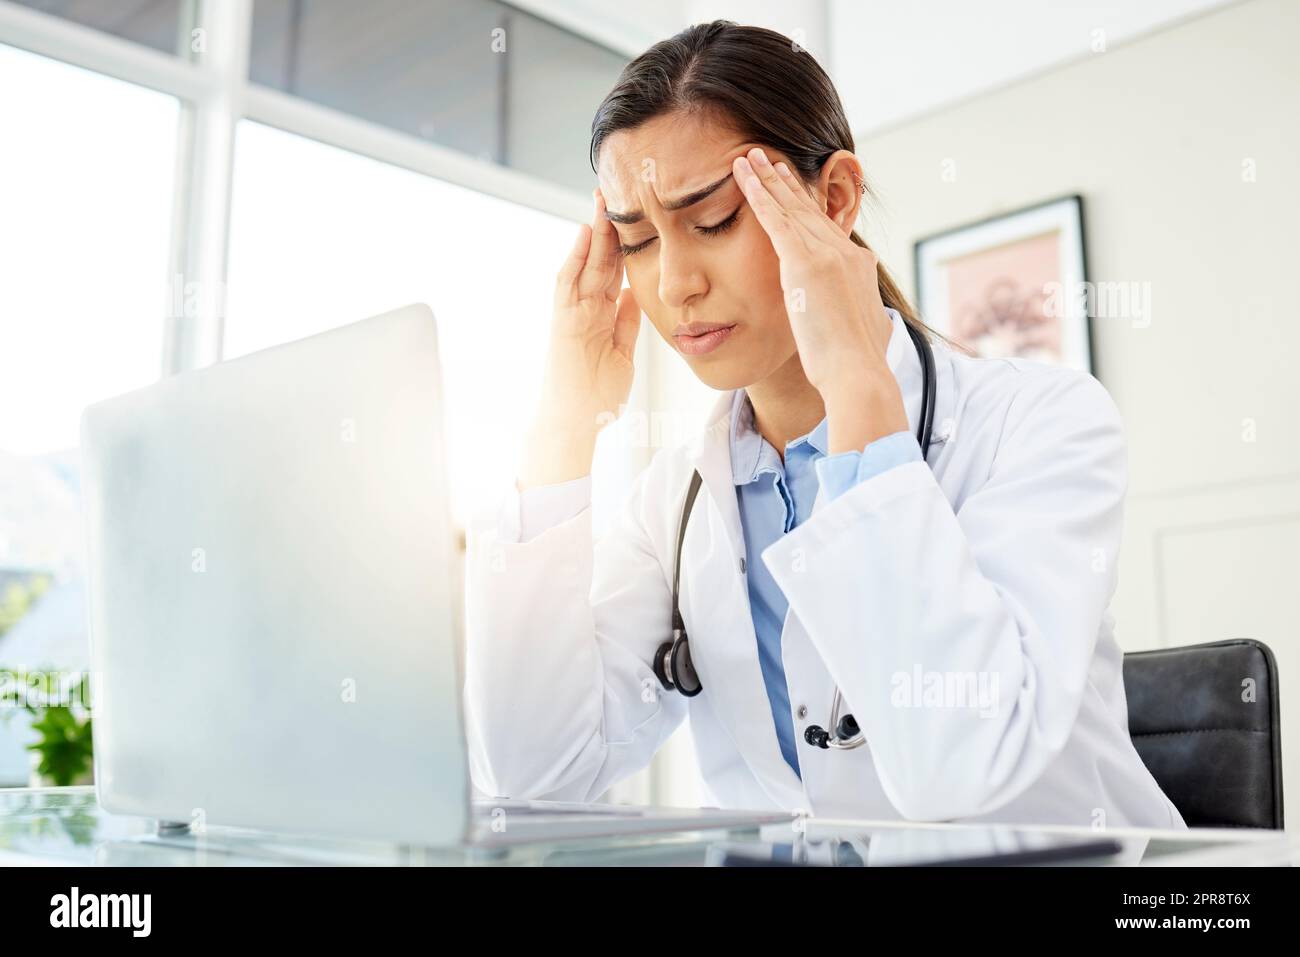 Nahaufnahme einer jungen gemischten Ärztin, die besorgt aussah und Kopfschmerzen hatte, während sie an einem Computer in ihrem Büro arbeitete. Hispanische Frau mit Kopfschmerzen und Stress im Krankenhaus Stockfoto